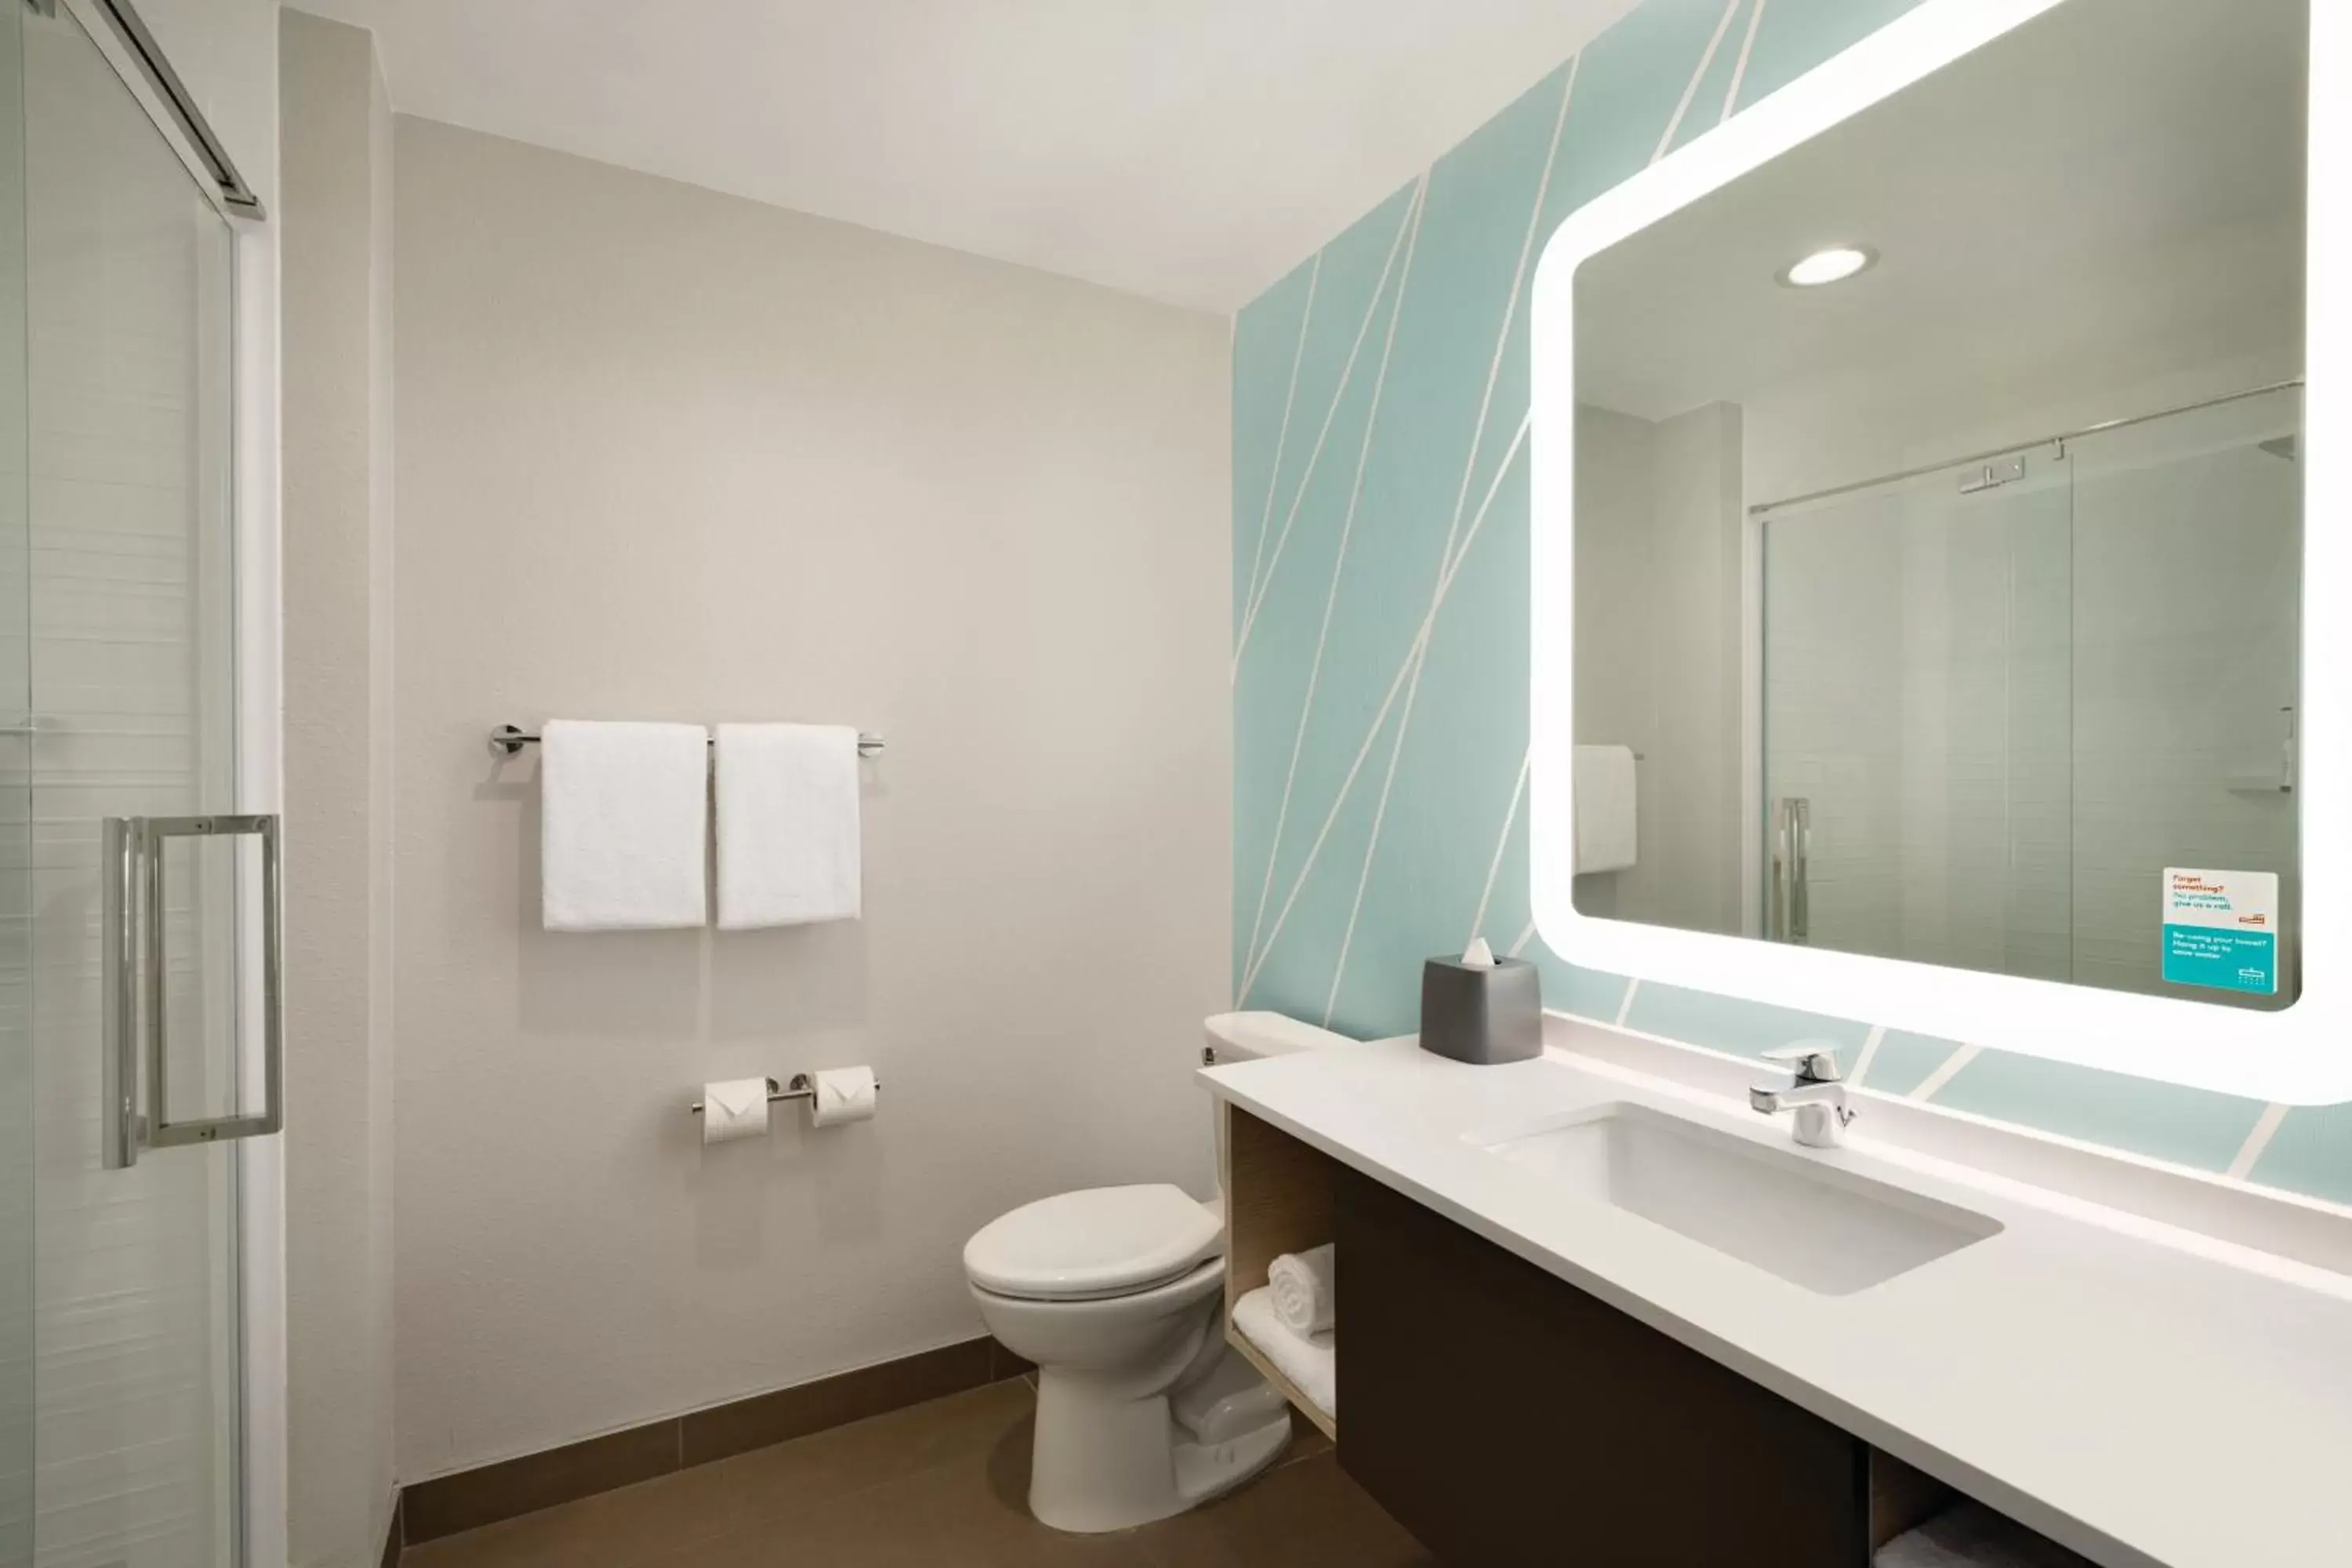 Bathroom in avid hotels - Midland, an IHG Hotel